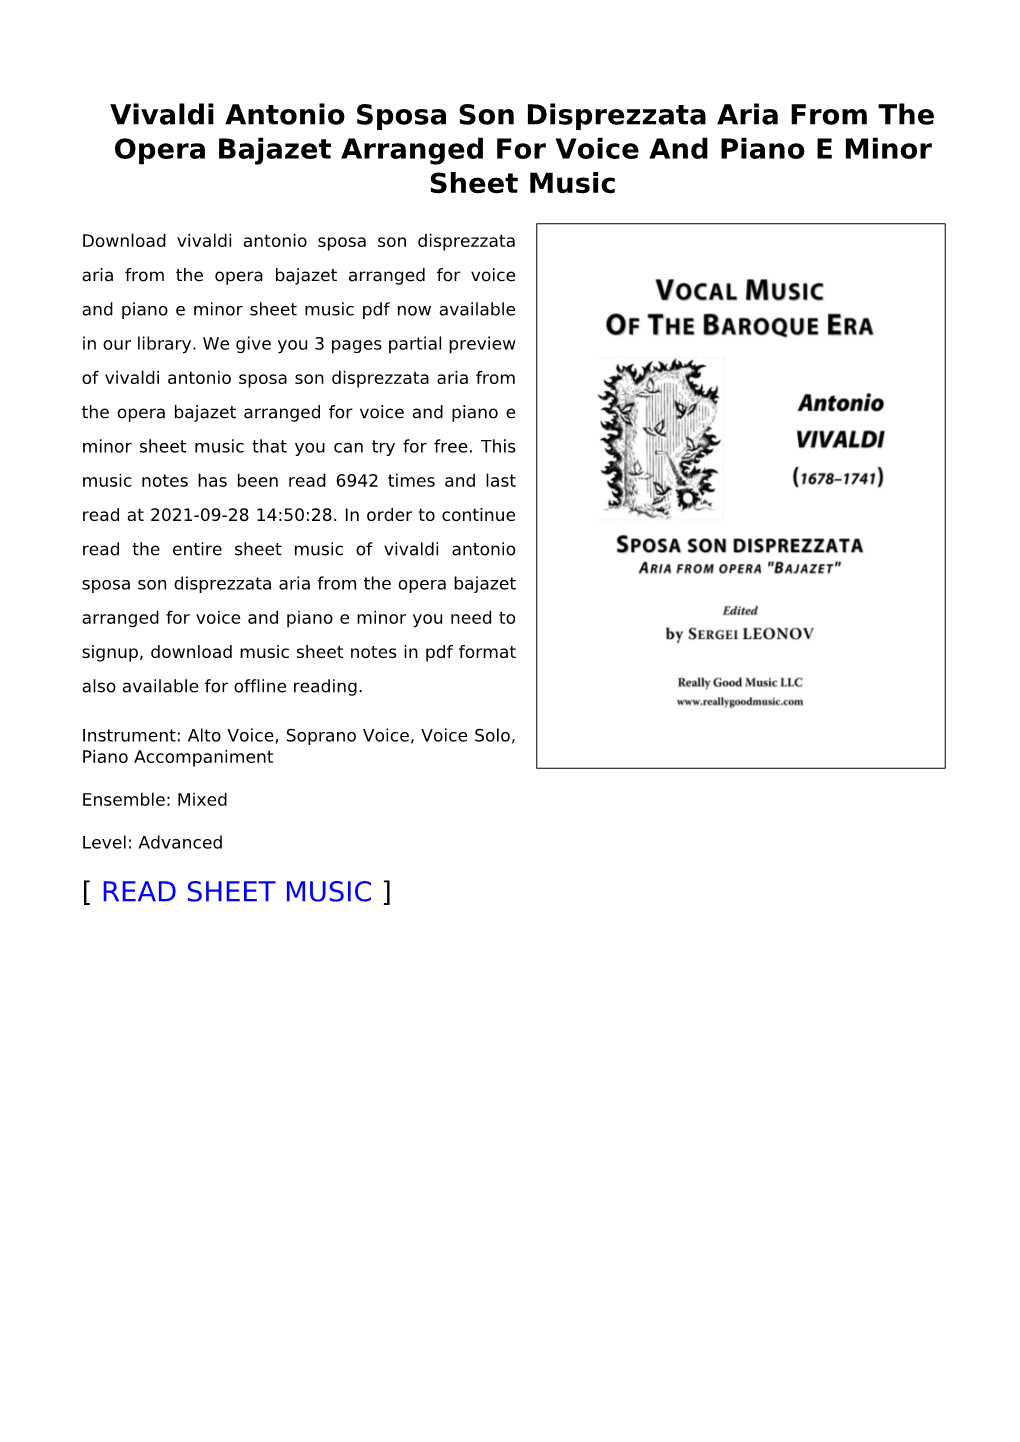 Vivaldi Antonio Sposa Son Disprezzata Aria from the Opera Bajazet Arranged for Voice and Piano E Minor Sheet Music